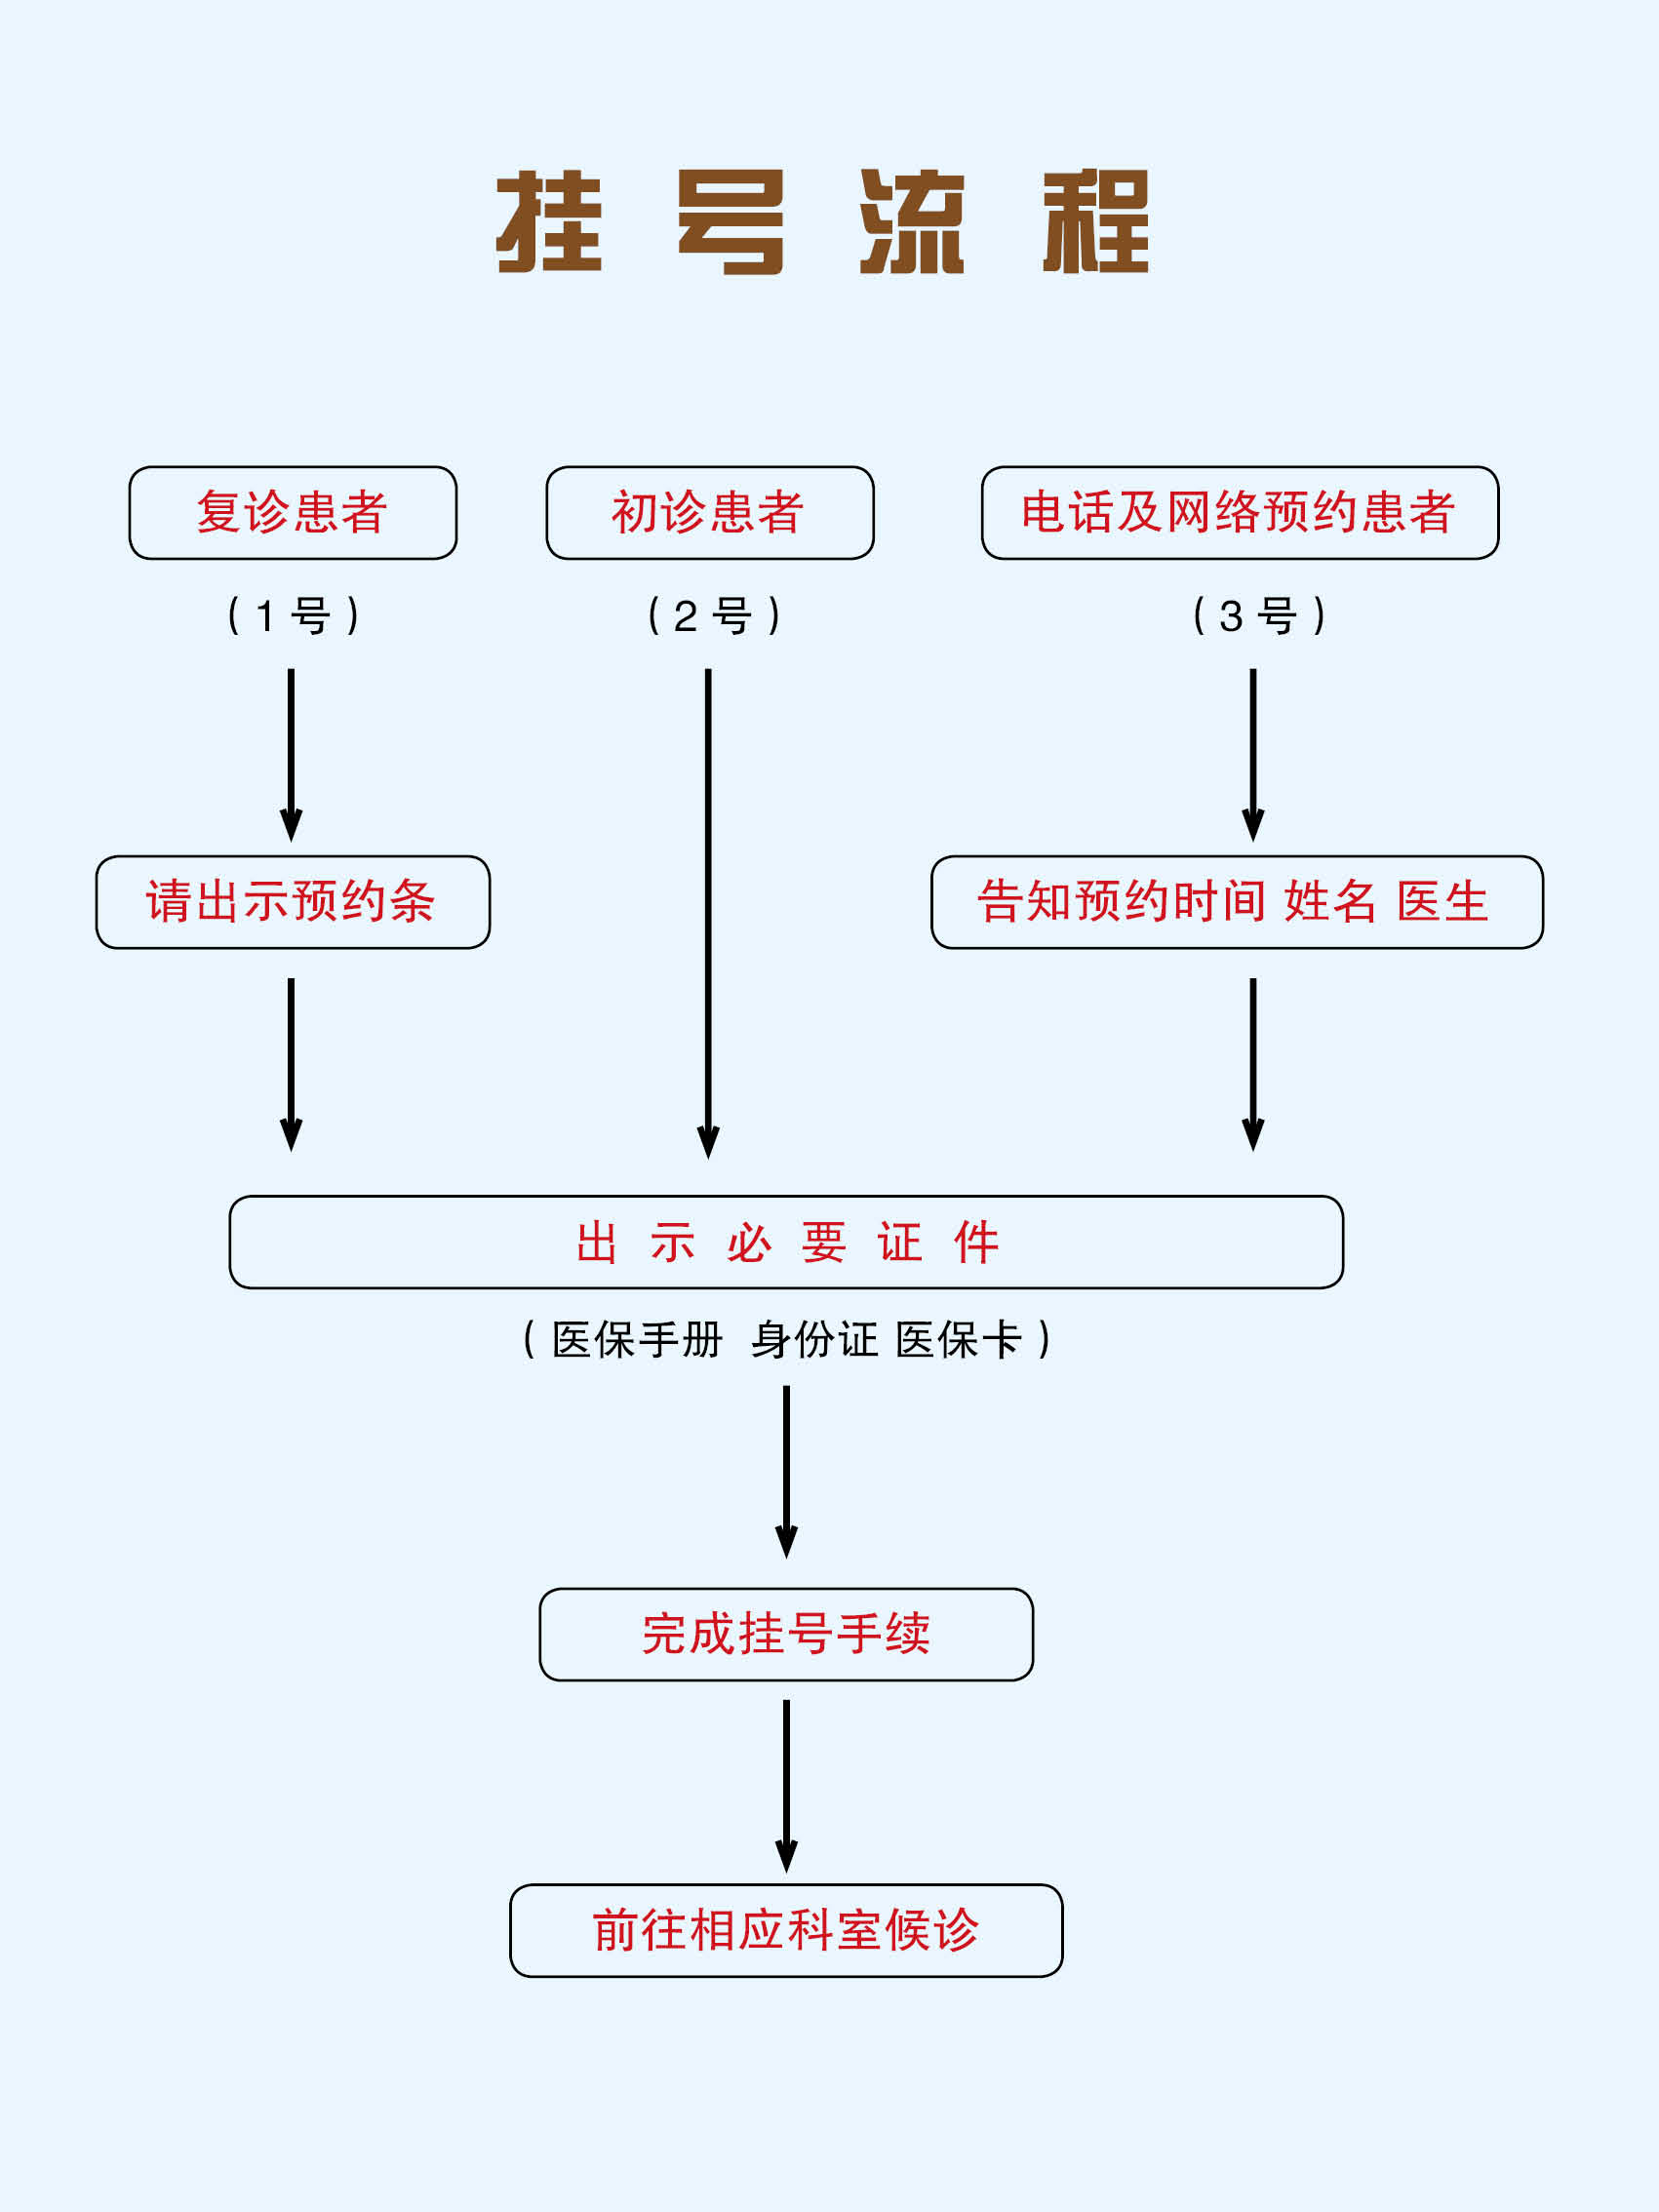 北京大学第三医院"医院黄牛挂号的几种方法",的简单介绍